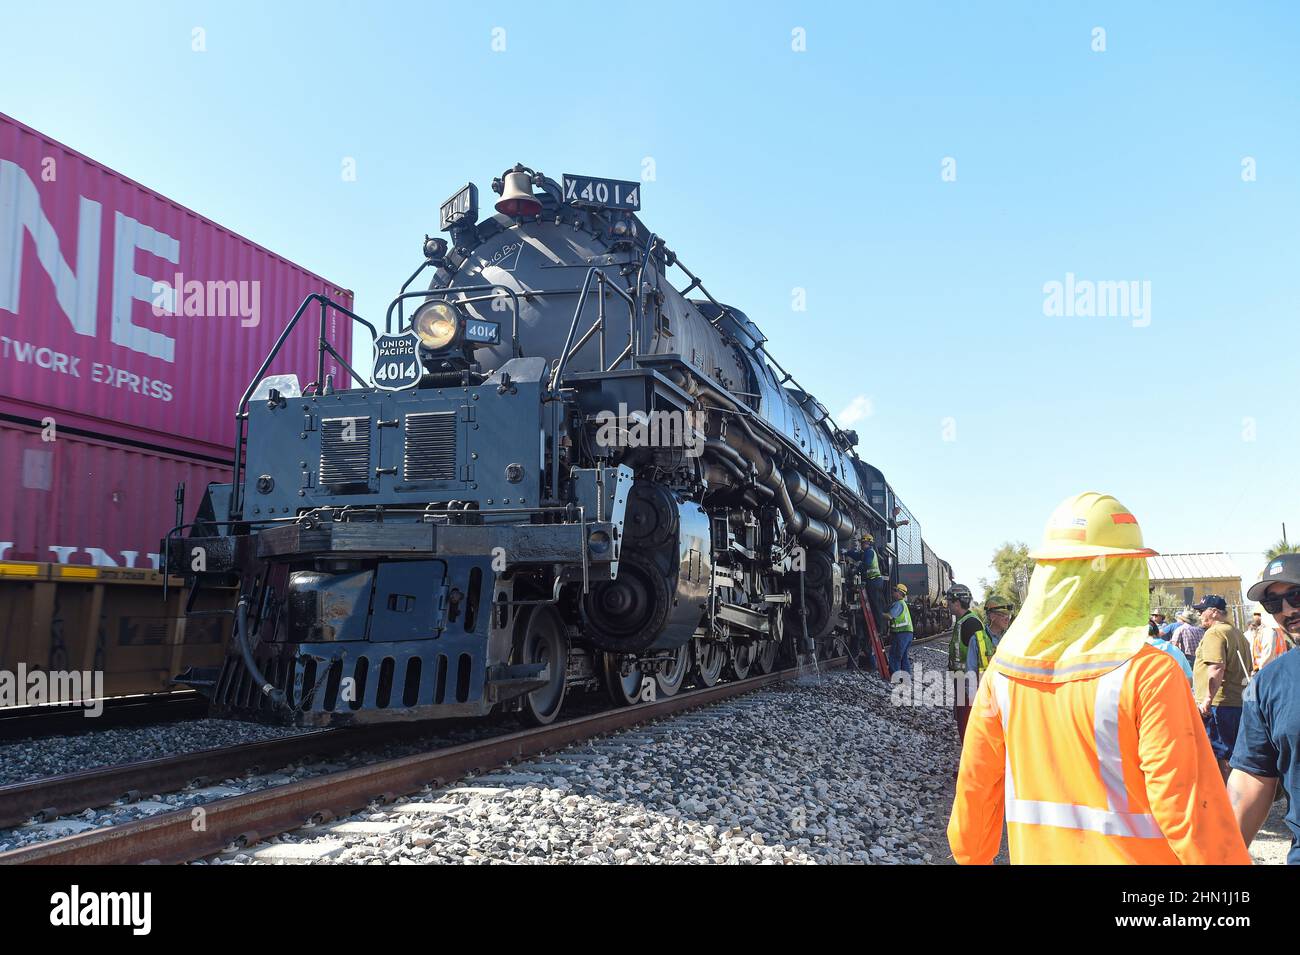 La locomotive Union Pacific 'Big Boy' 4014 s'arrête pour l'entretien à Niland, en Californie. Banque D'Images